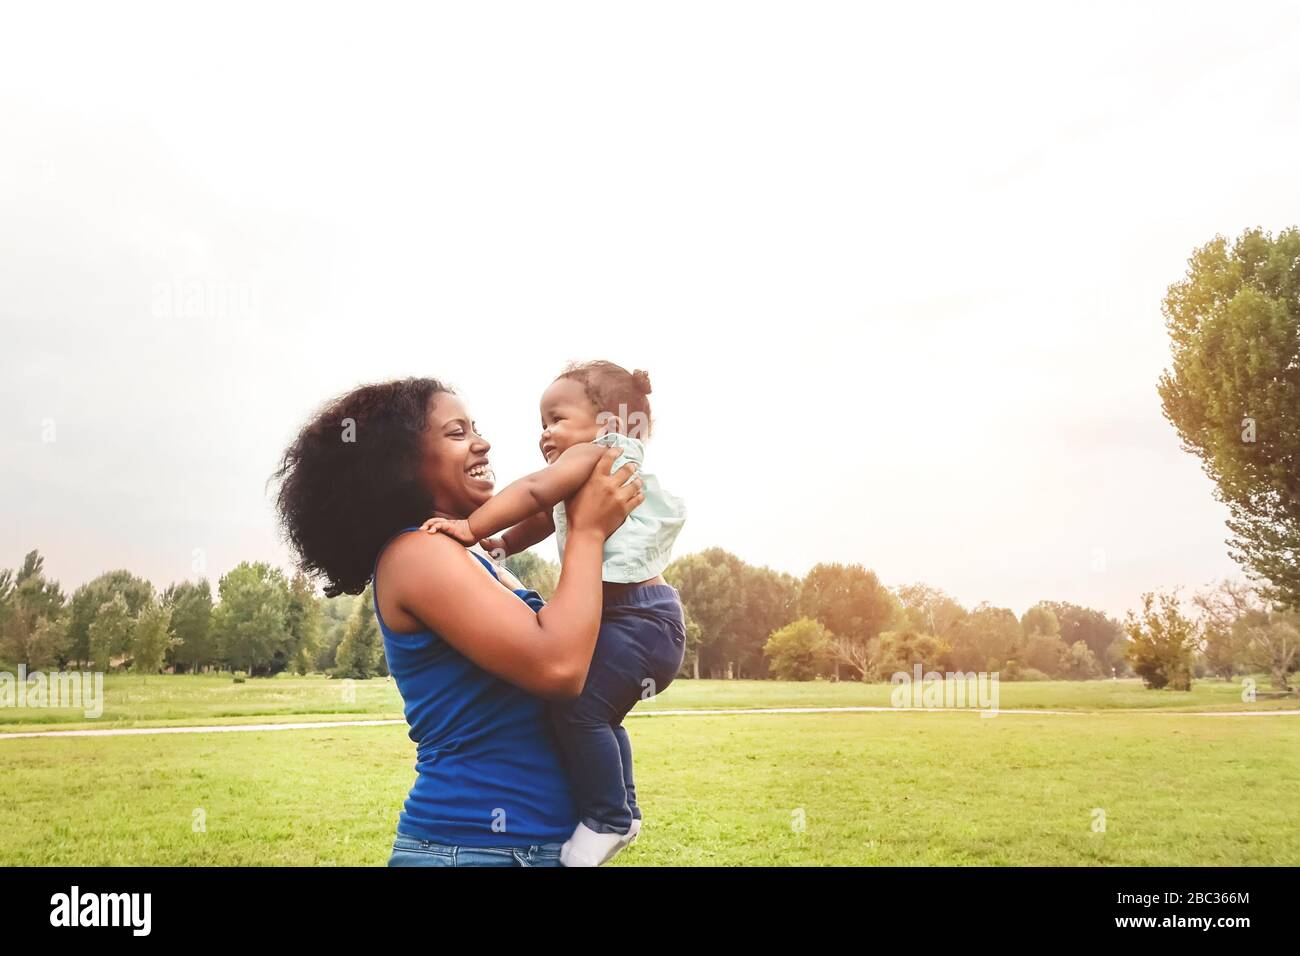 Glückliche Mutter hat Spaß mit ihrer Tochter im Park im Freien - liebevolle Familie genießt gemeinsame Zeit - Eltern lieben und Mutter Tageskonzept Stockfoto